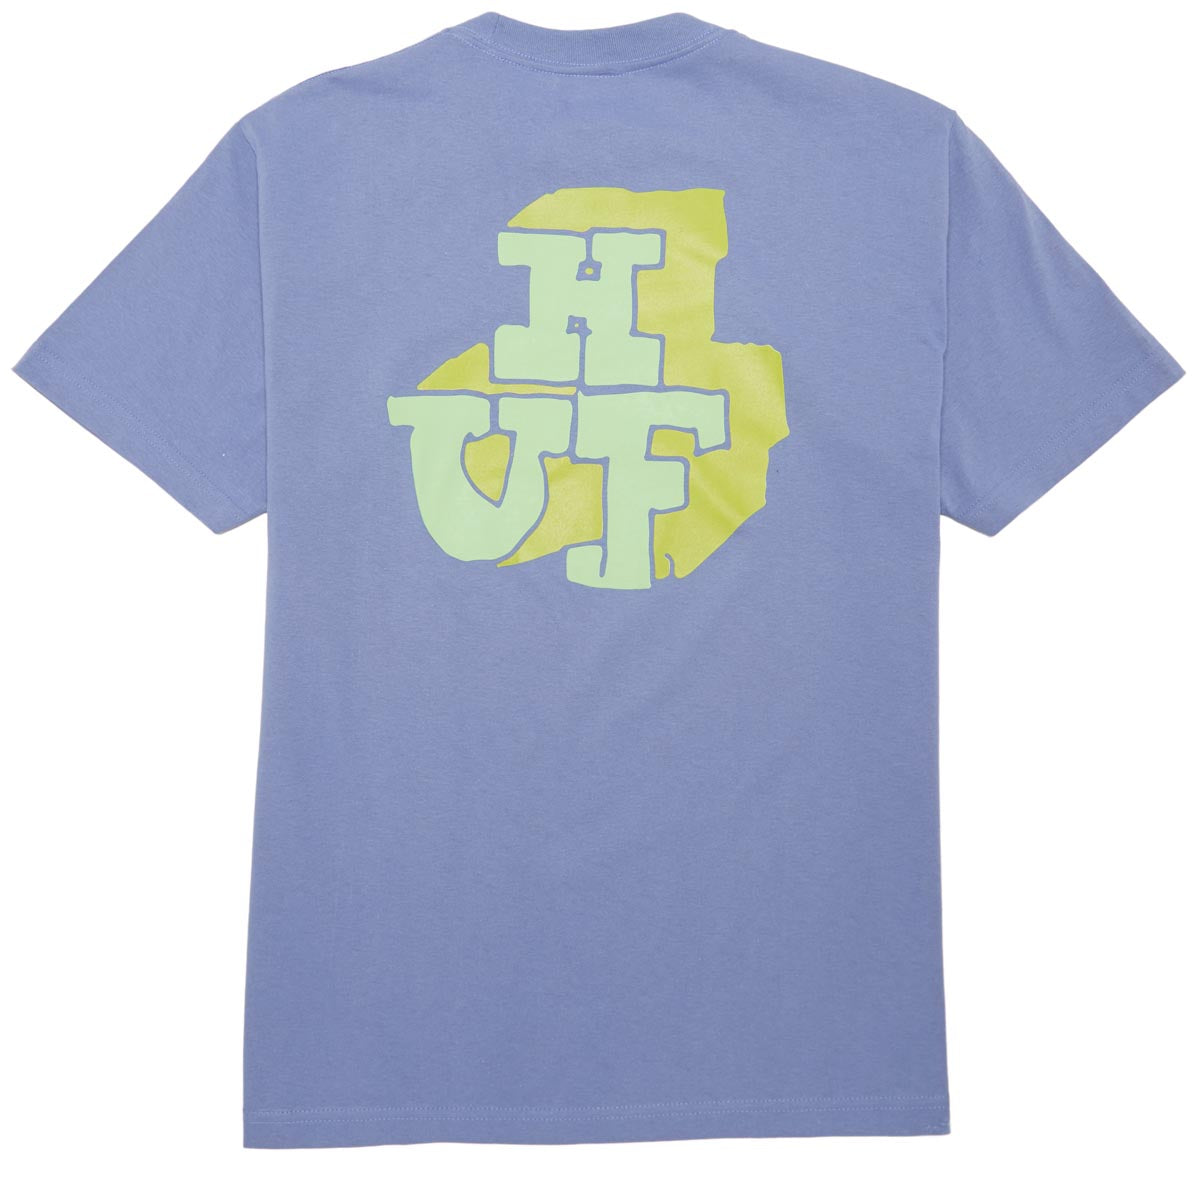 HUF Morex T-Shirt - Vintage Violet image 1